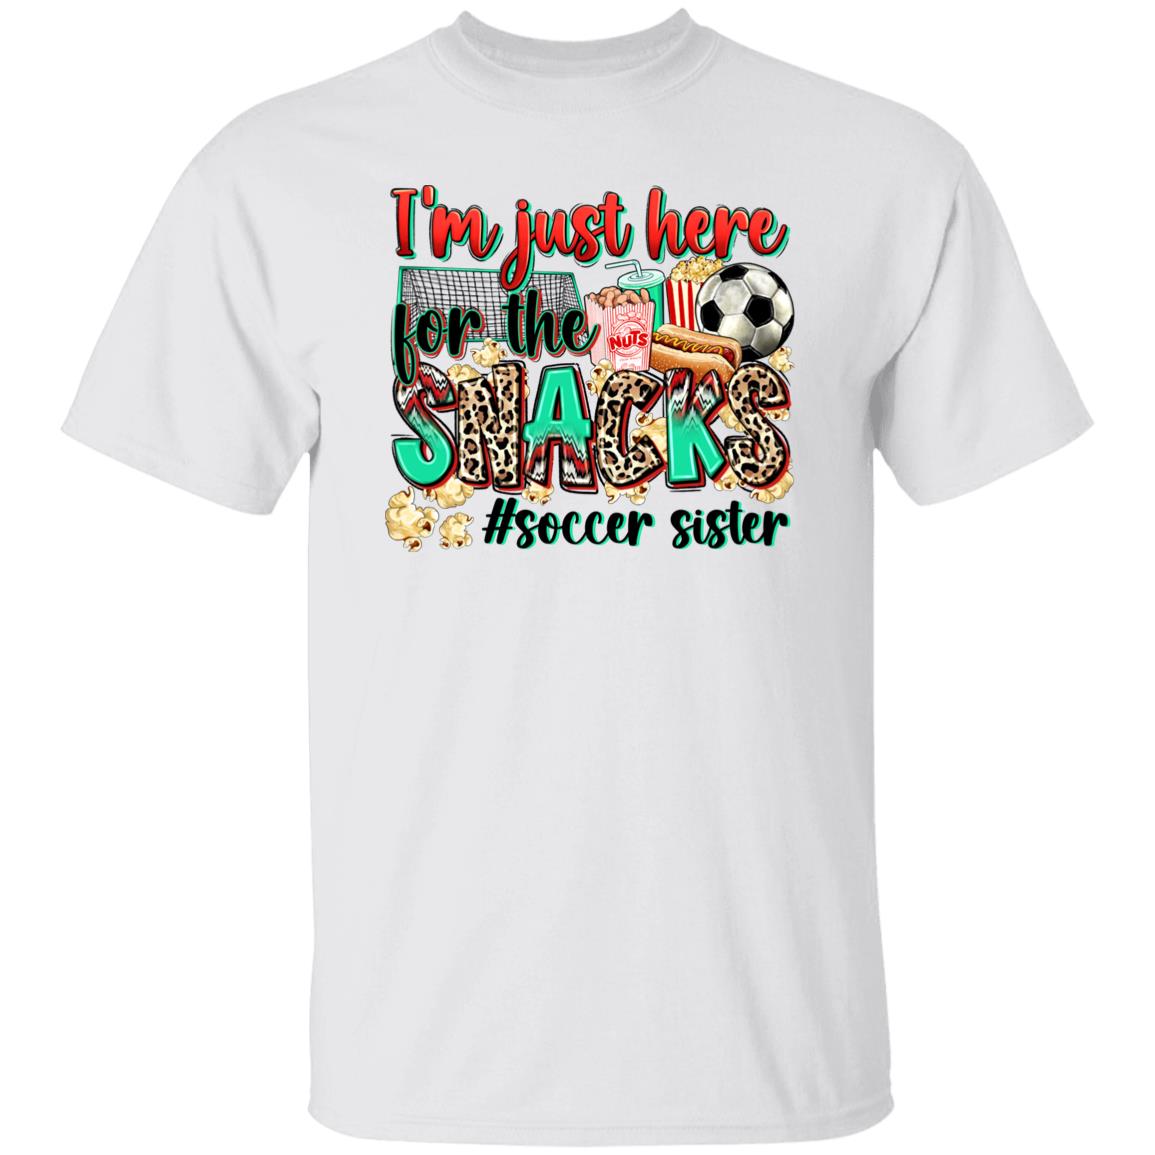 Soccer sister T-Shirt Soccer cheer I'm just here for the snacks Unisex Tee Sand White Sport Grey-Family-Gift-Planet